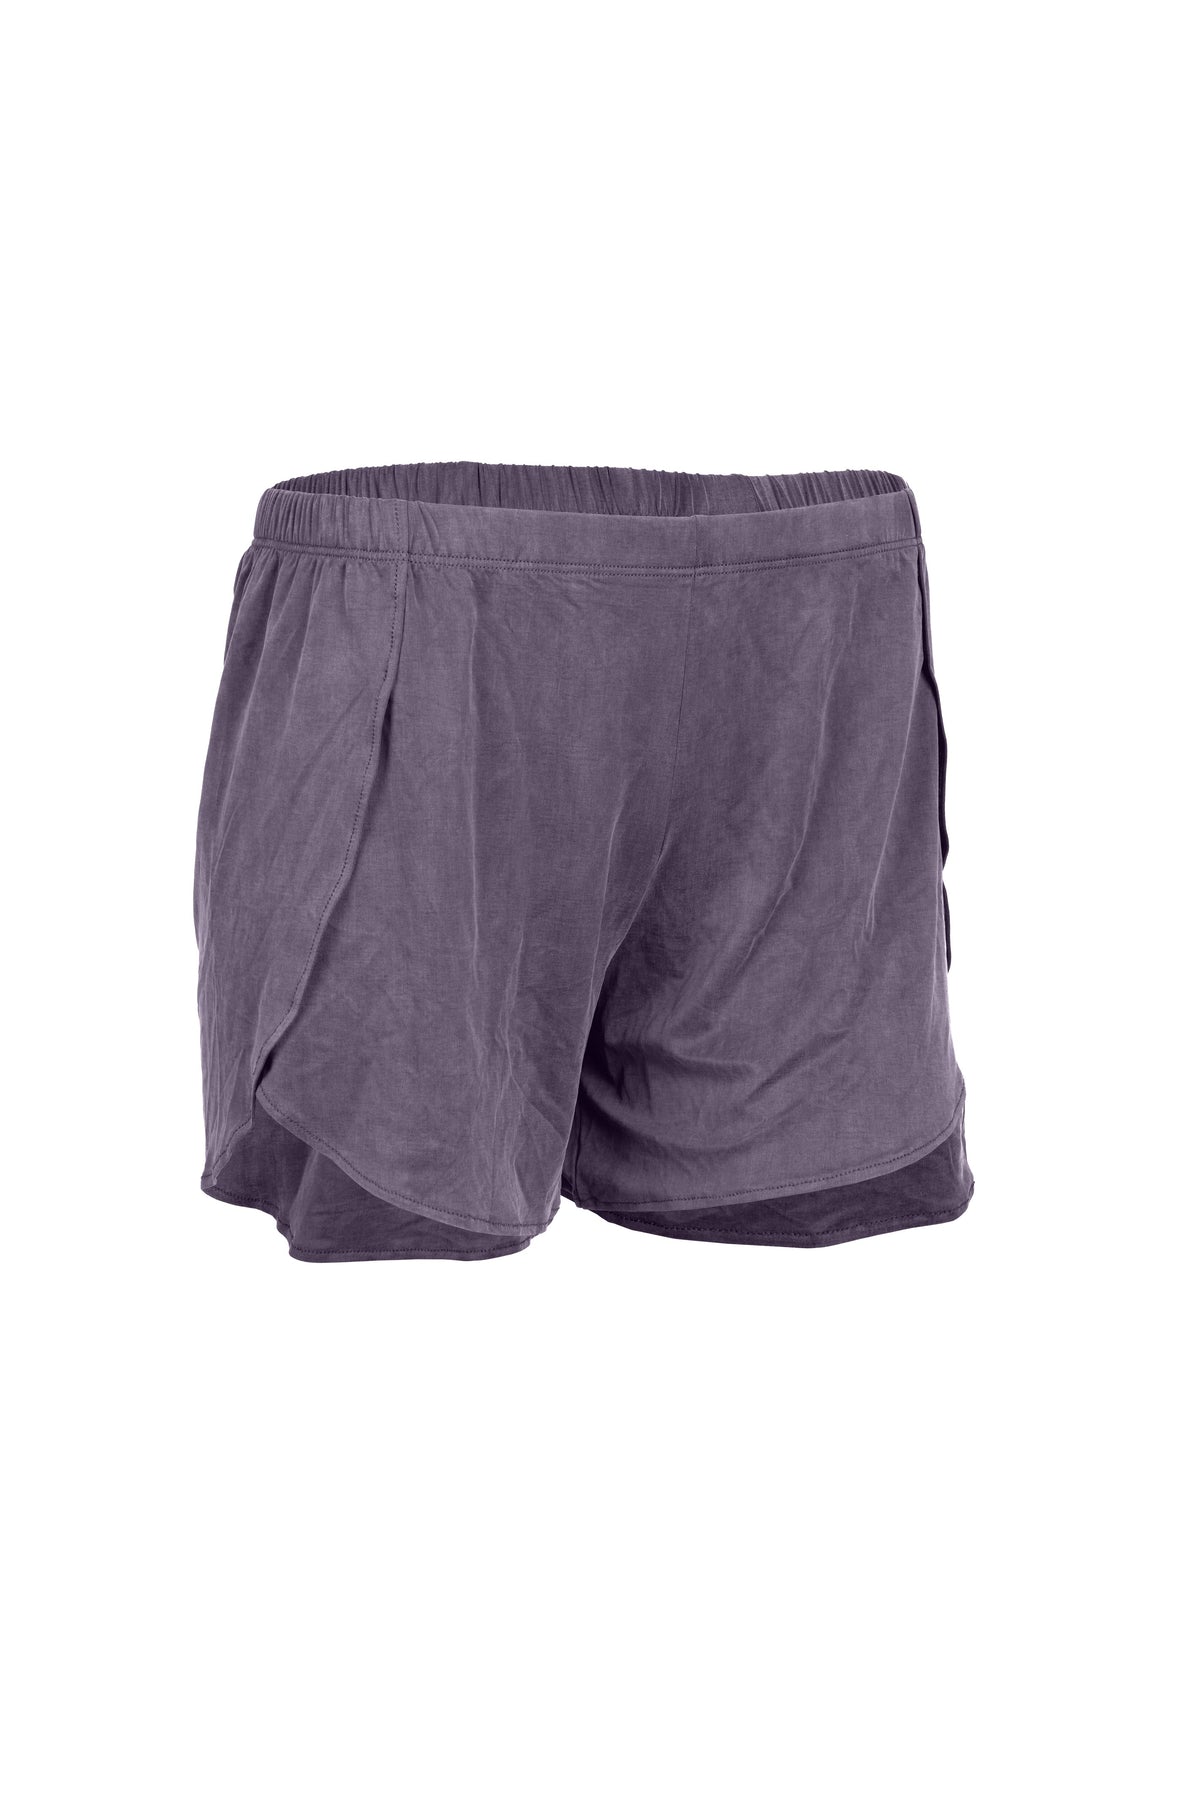 Cupro Lounge Shorts - lilac stone